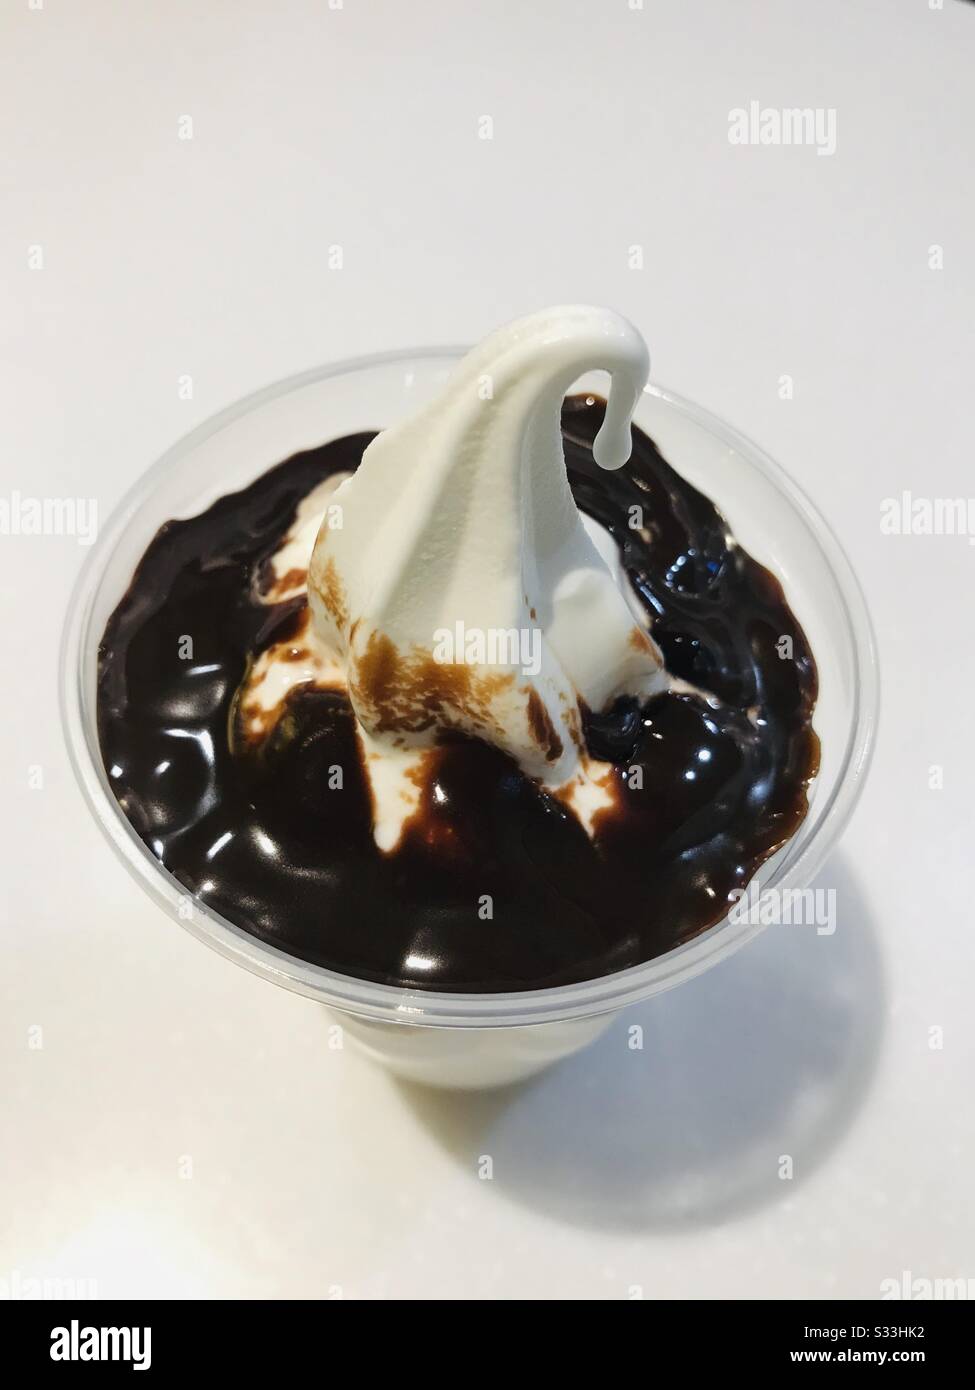 Schokoladen-Fudge-Eis, das vor dem Verkosten auf dem Tisch aufbewahrt wurde, nahm eine Schnapp-Vanille-Eiscreme, Kegeleis in einer transparenten Tasse auf weißem Tisch - Nahaufnahme eines Desserts Stockfoto